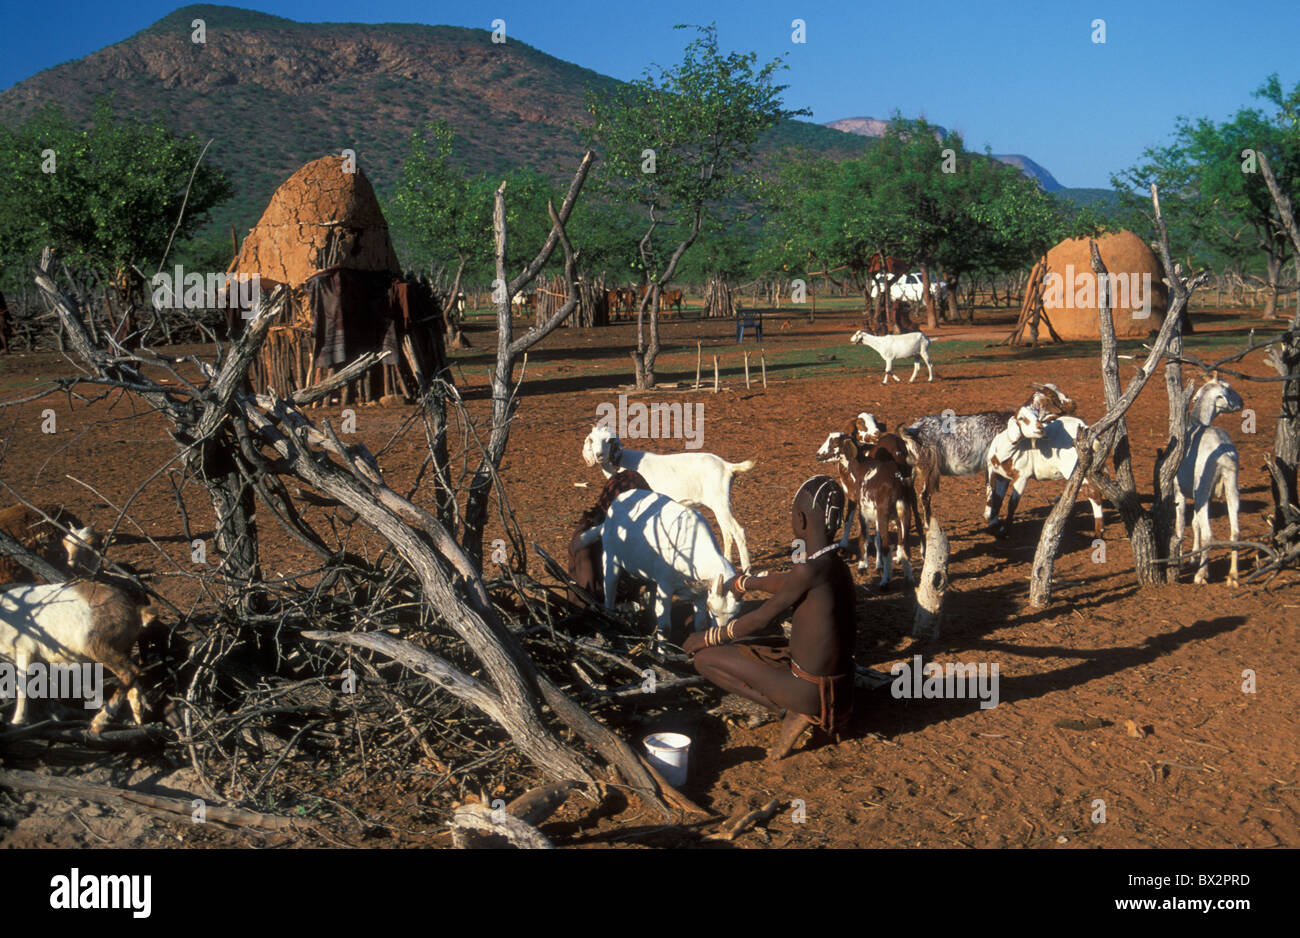 Les enfants de l'Afrique les chèvres Hut Himba Namibie Afrique du Kraal Kaokoveld Ovahimba personnes nomades stockage shed tr Banque D'Images